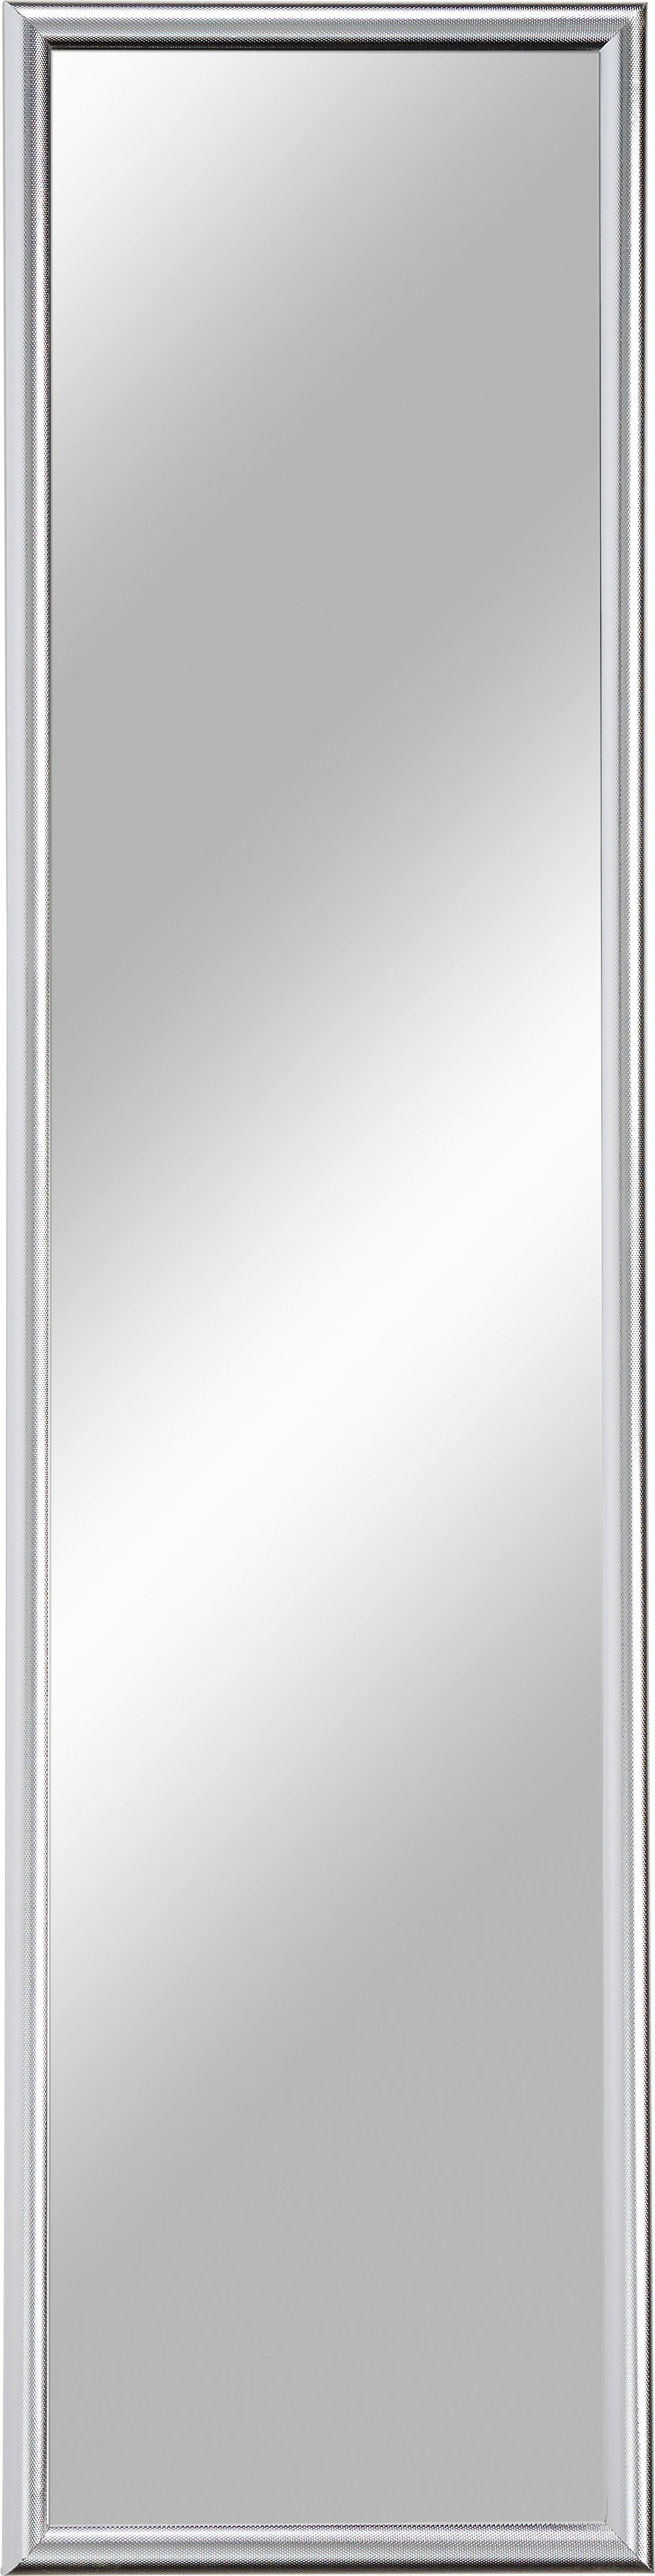 Nástěnné Zrcadlo Fumo 103-657 - barvy stříbra, Moderní, kompozitní dřevo/sklo (40/160cm) - Ondega